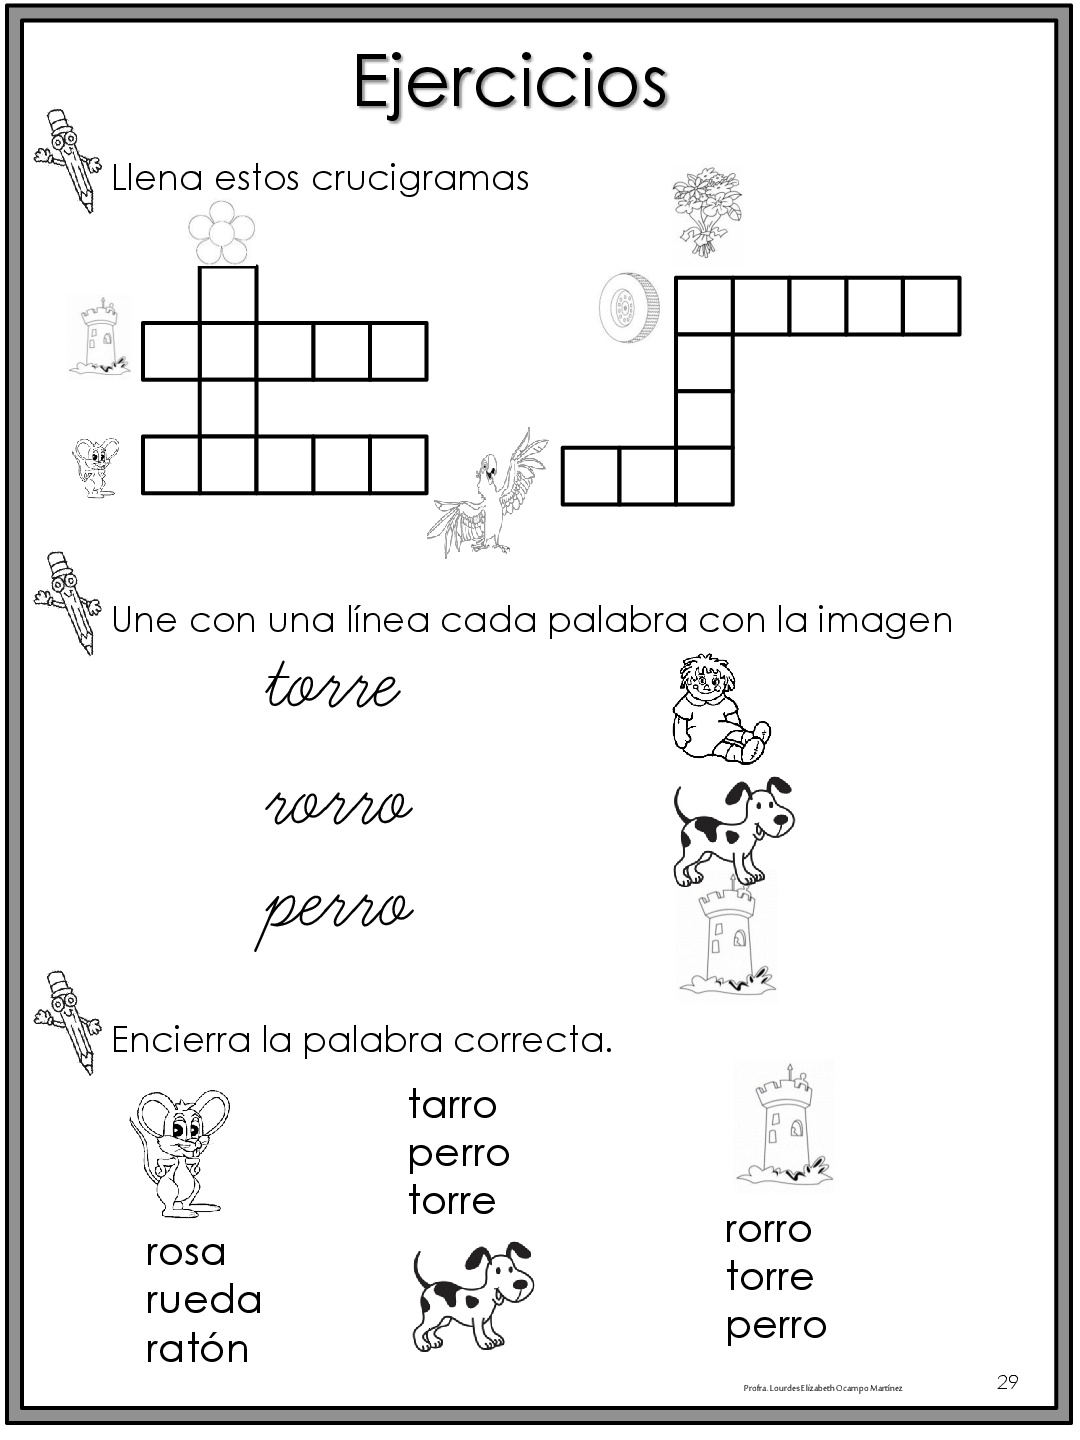 50-ejercicios-de-lecto-escritura-para-preescolar-y-primaria-015 - Imagenes Educativas